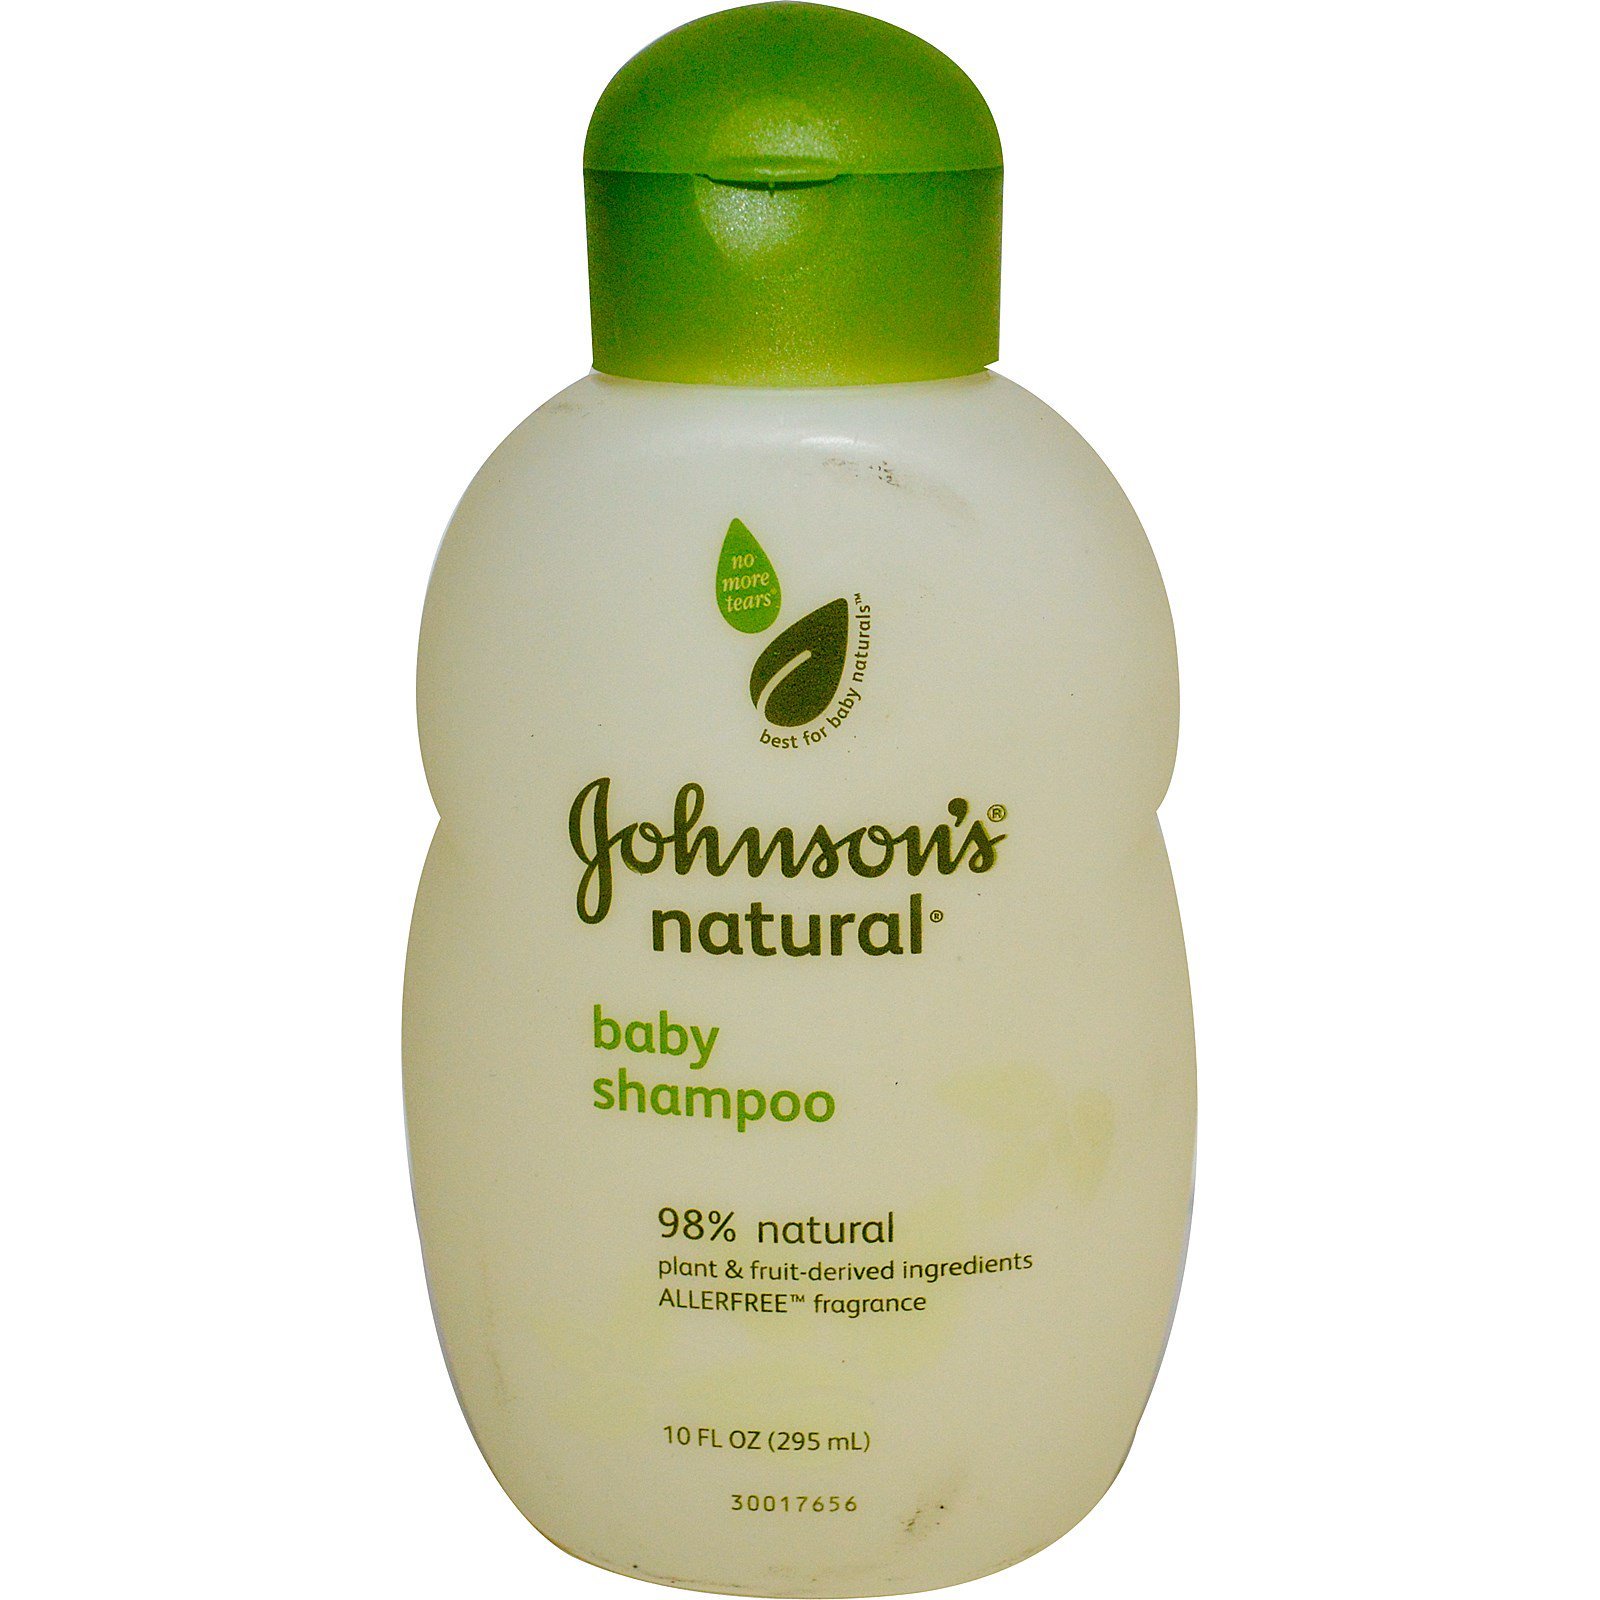 baby shampoo for natural hair